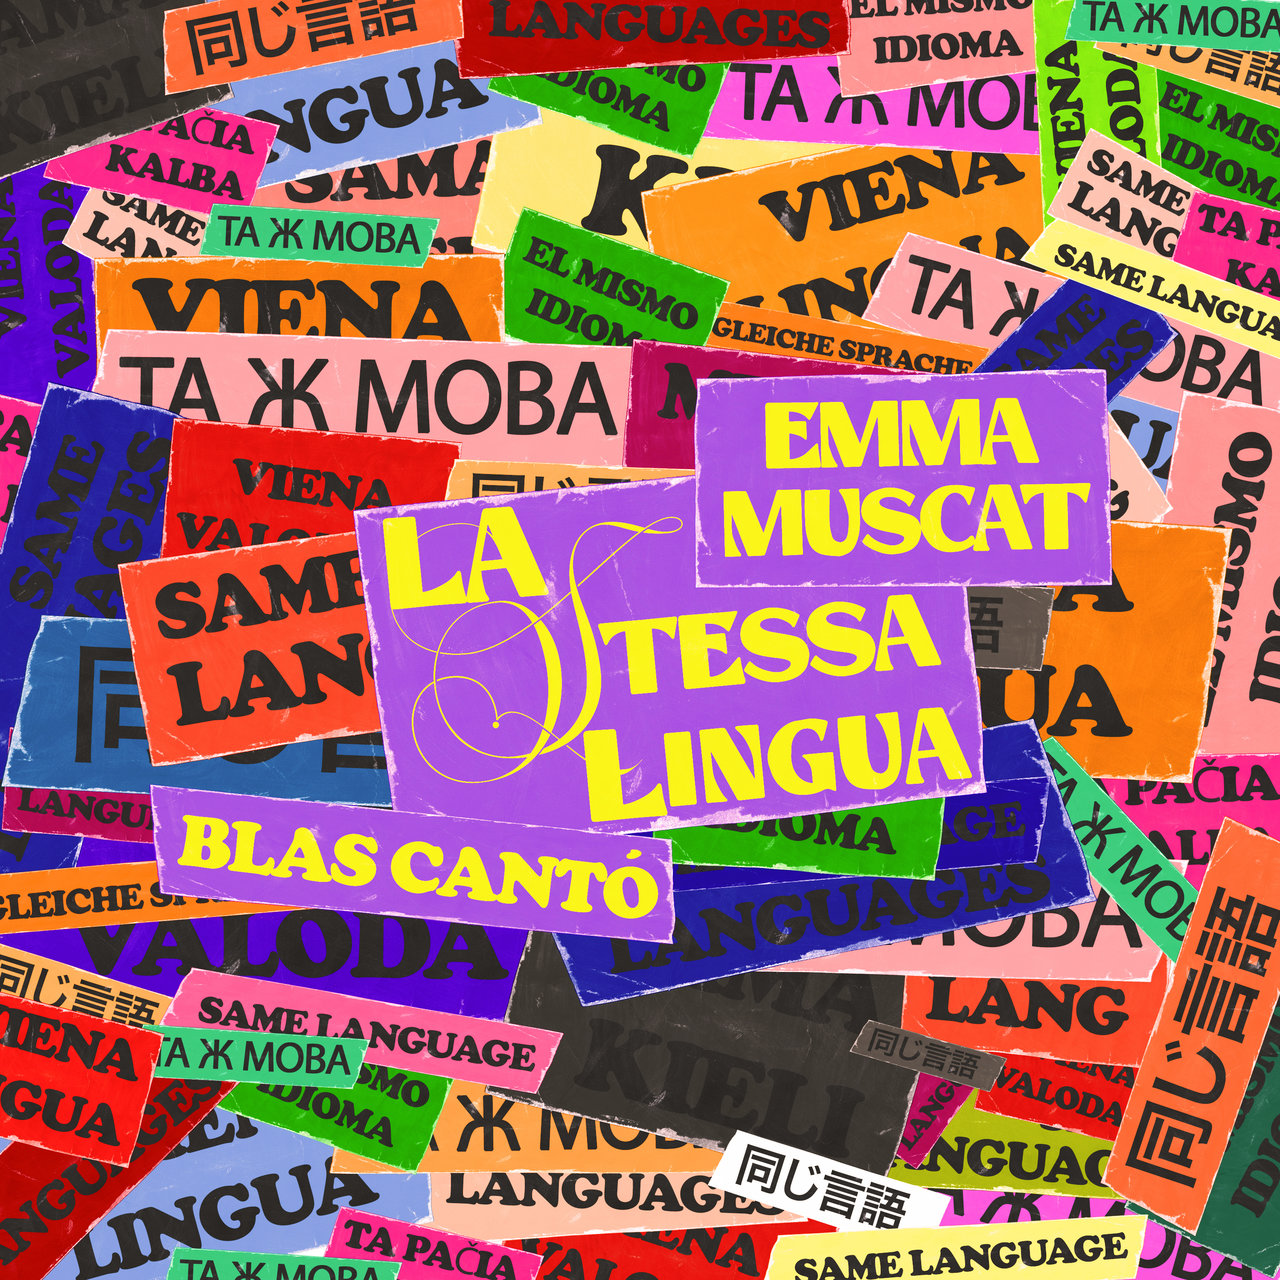 Emma Muscat featuring Blas Cantó — La stessa lingua cover artwork